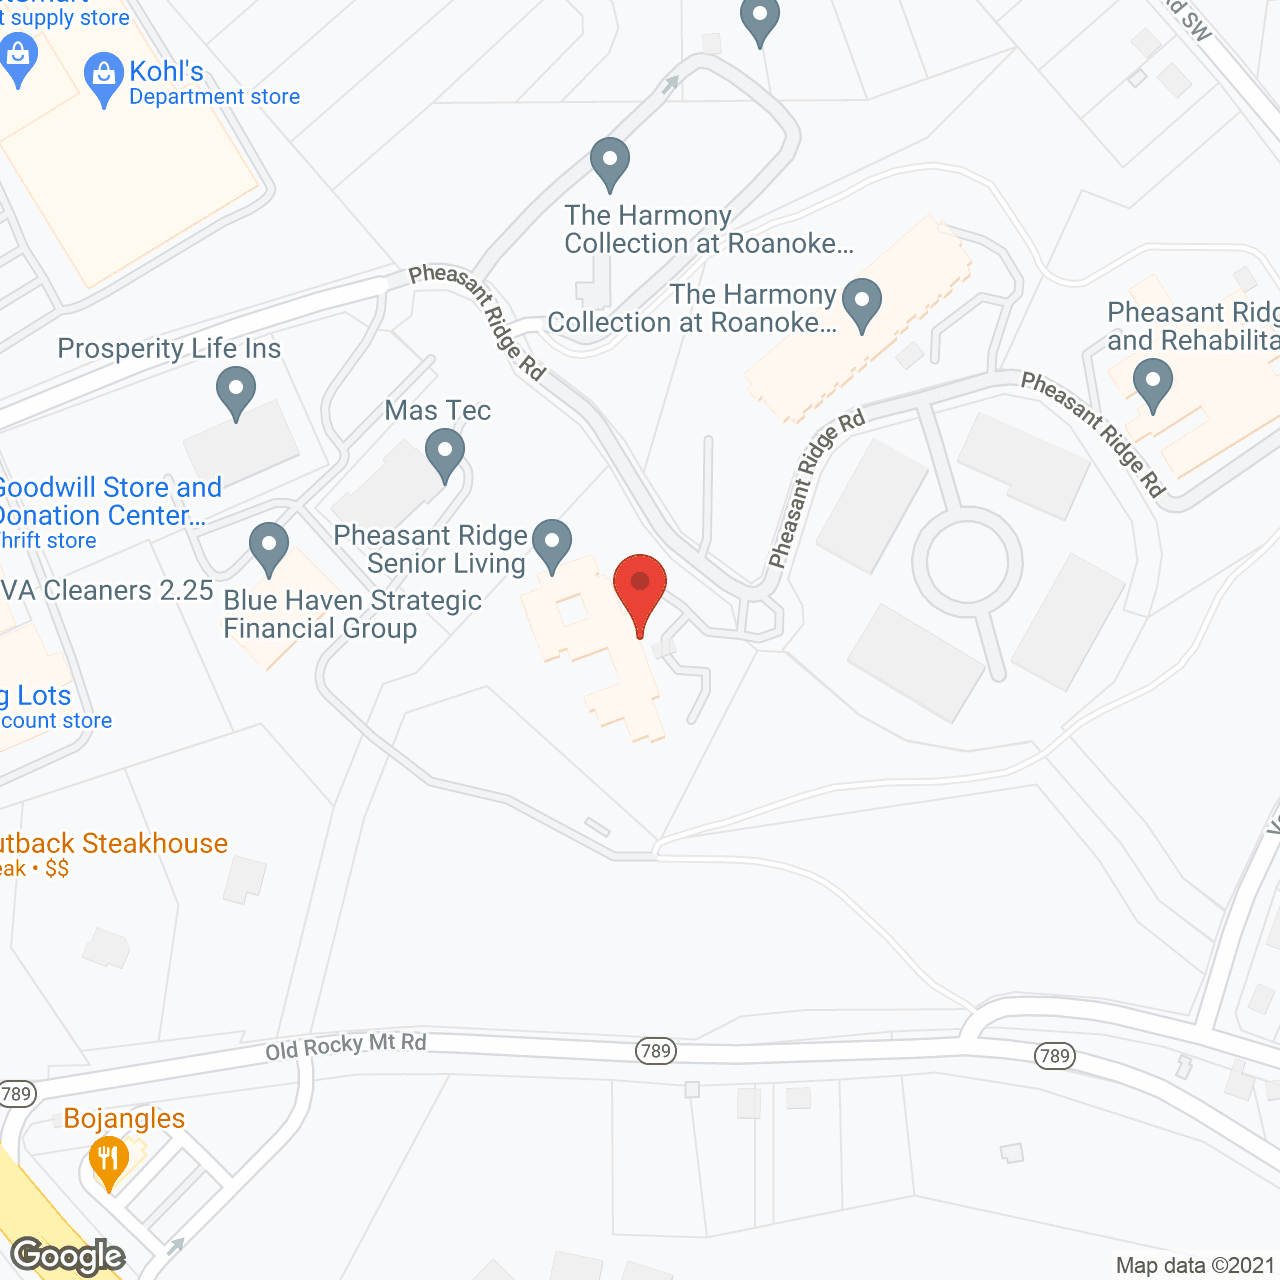 TerraBella Pheasant Ridge in google map